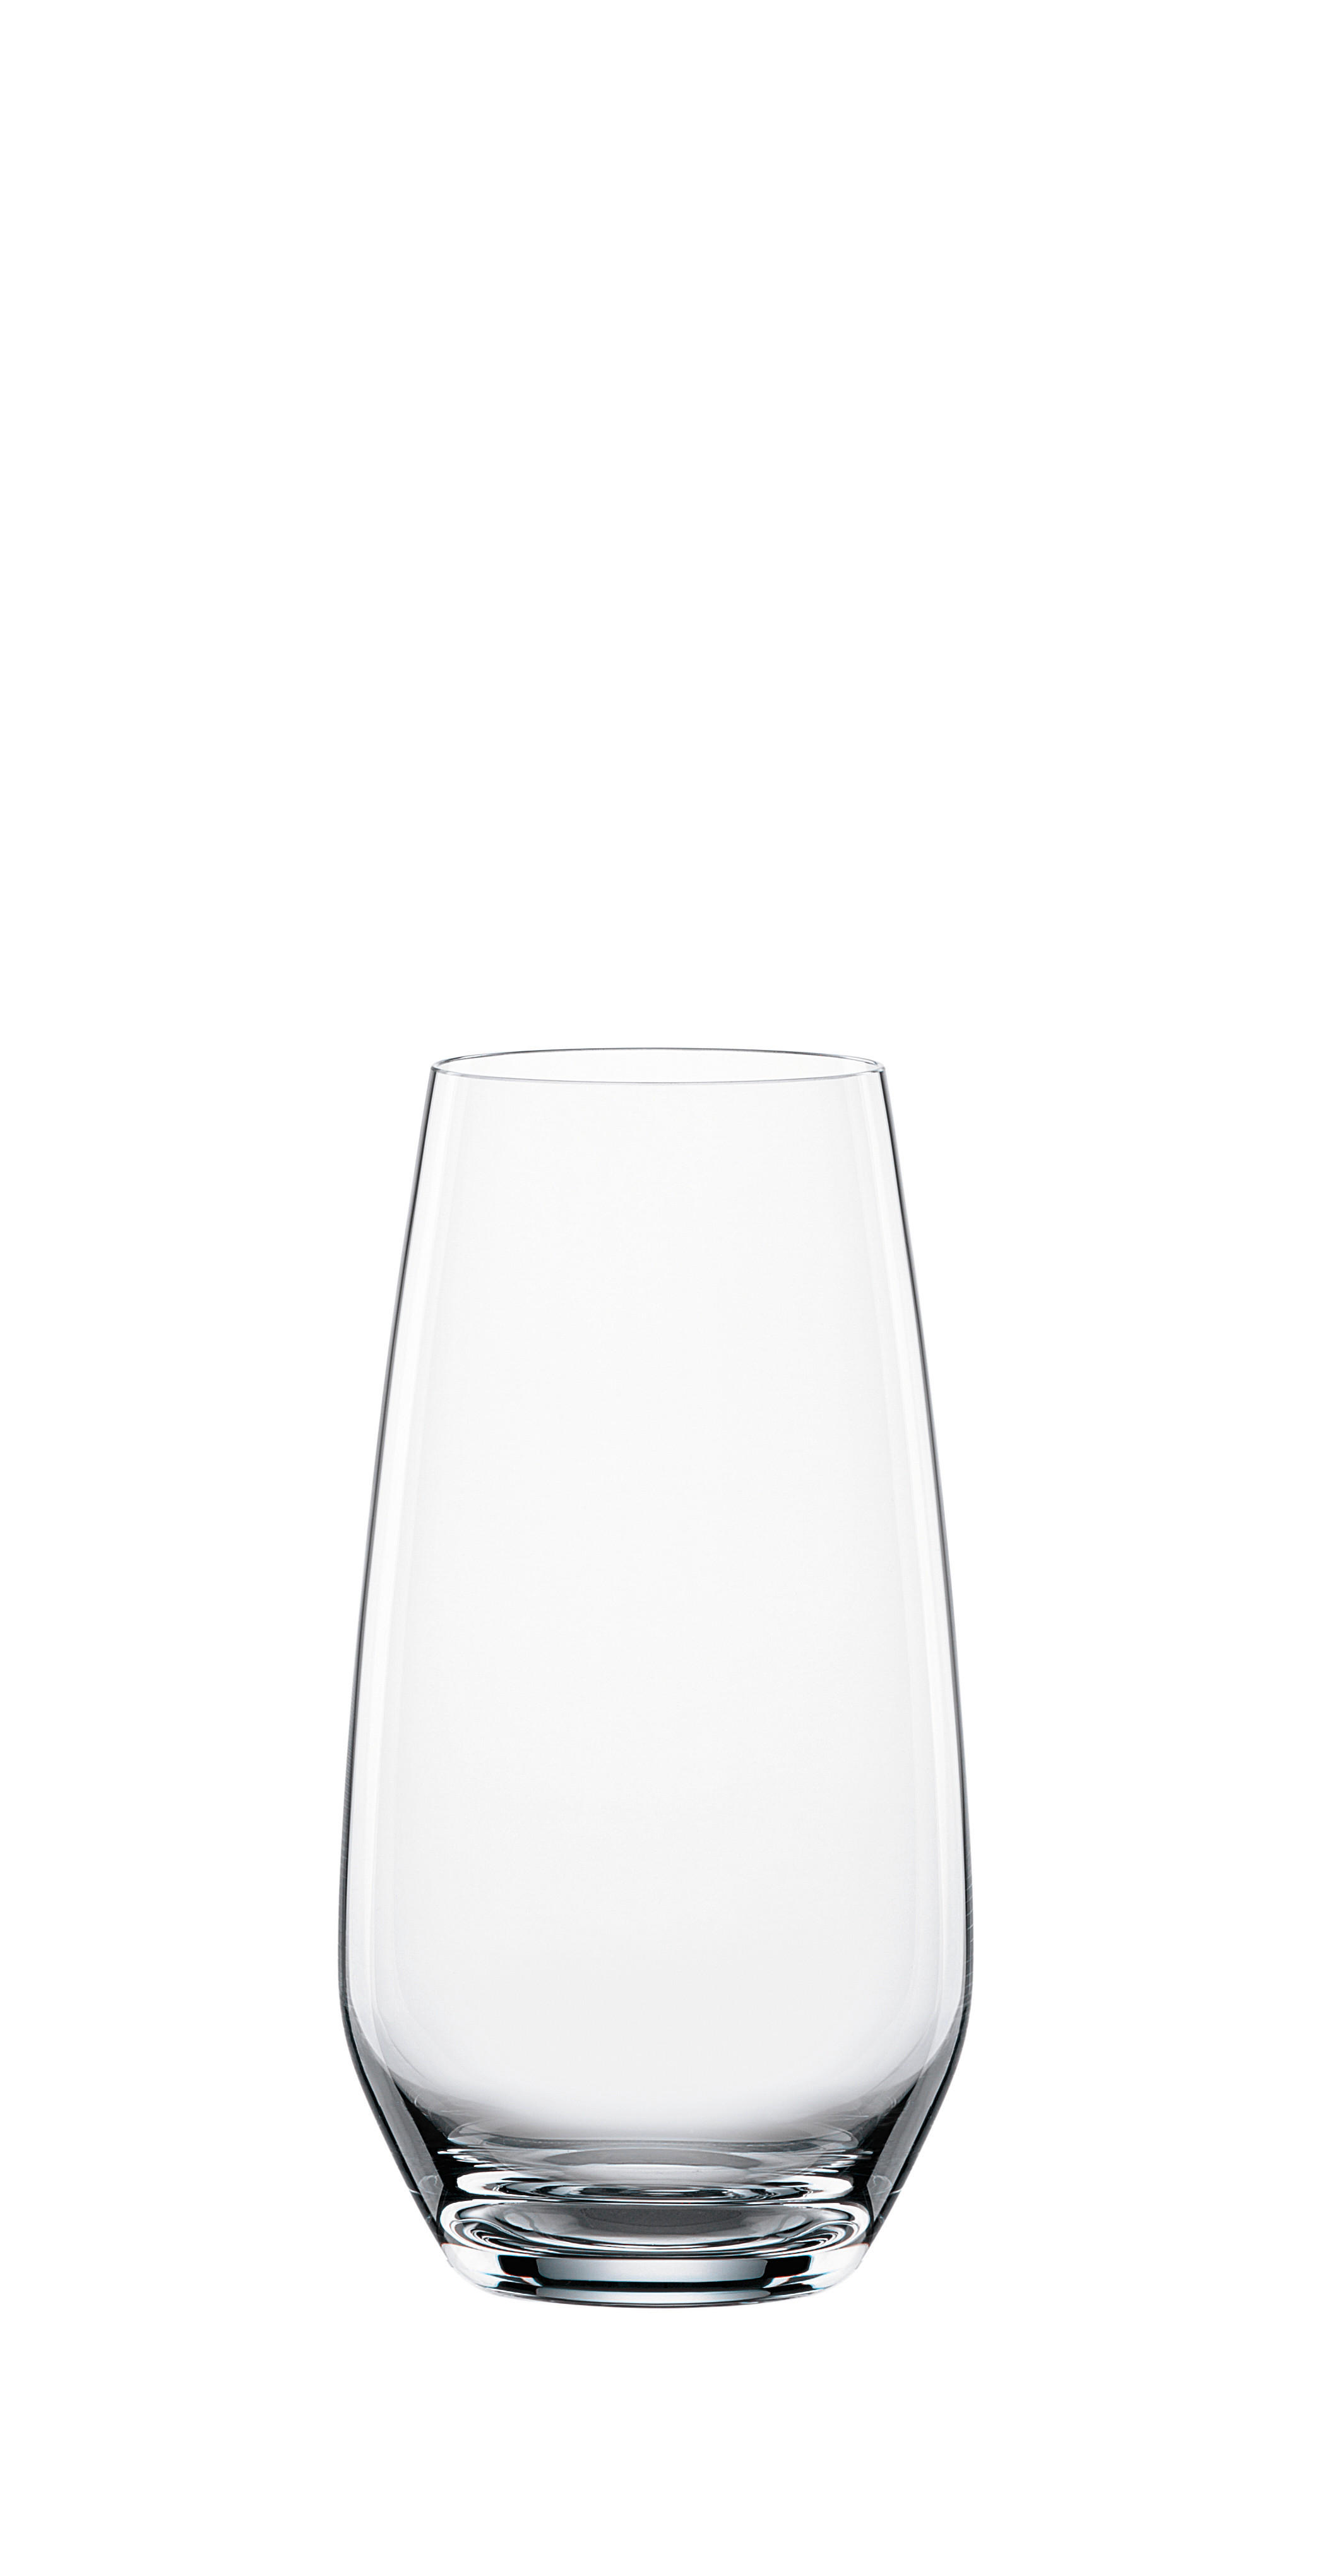 TRINKGLAS  6-teilig  - Basics, Glas (8/8/15,5cm) - Spiegelau